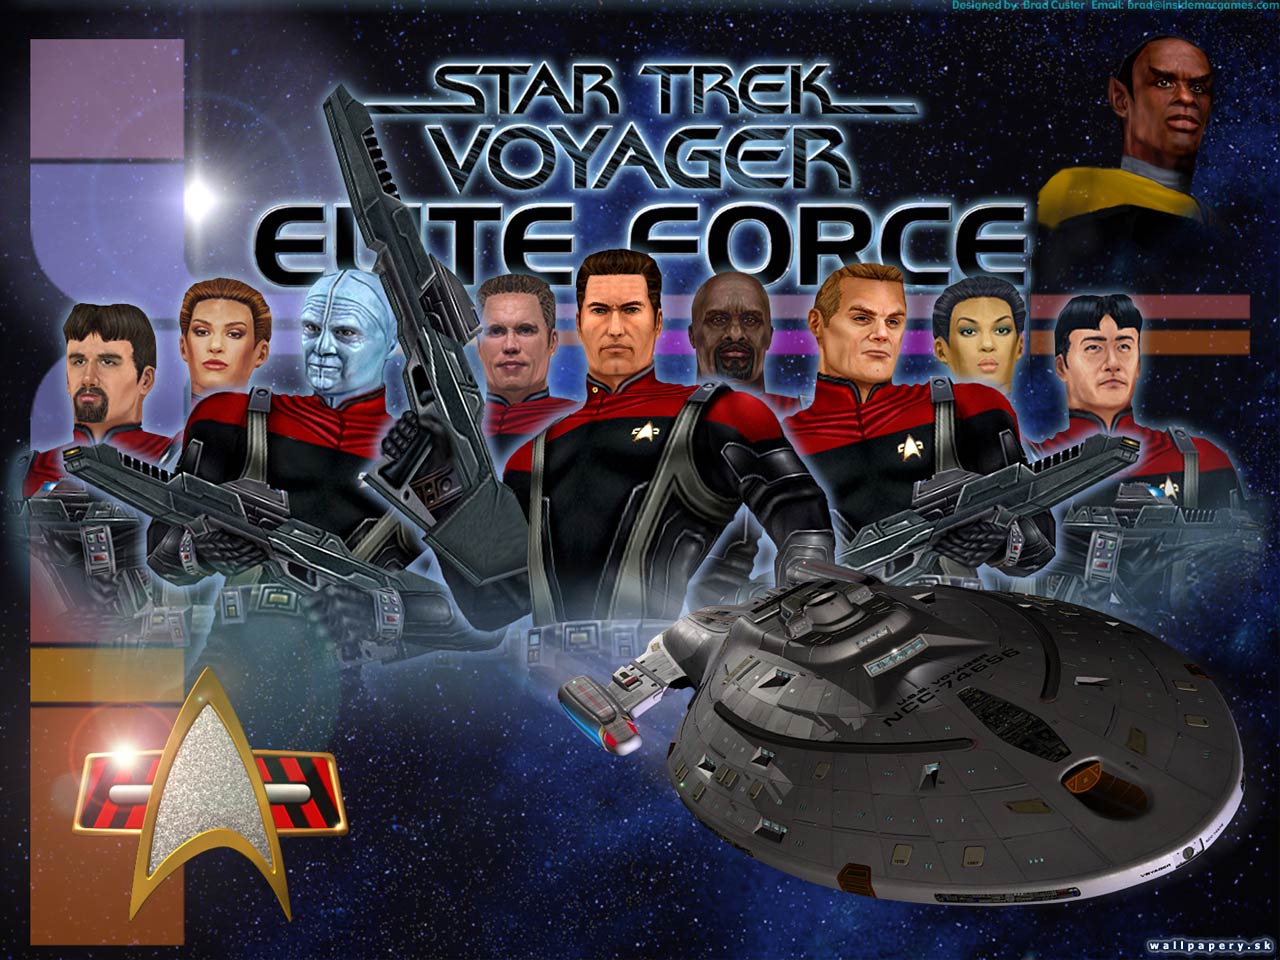 Star Trek: Voyager: Elite Force: Expansion Pack - wallpaper 1